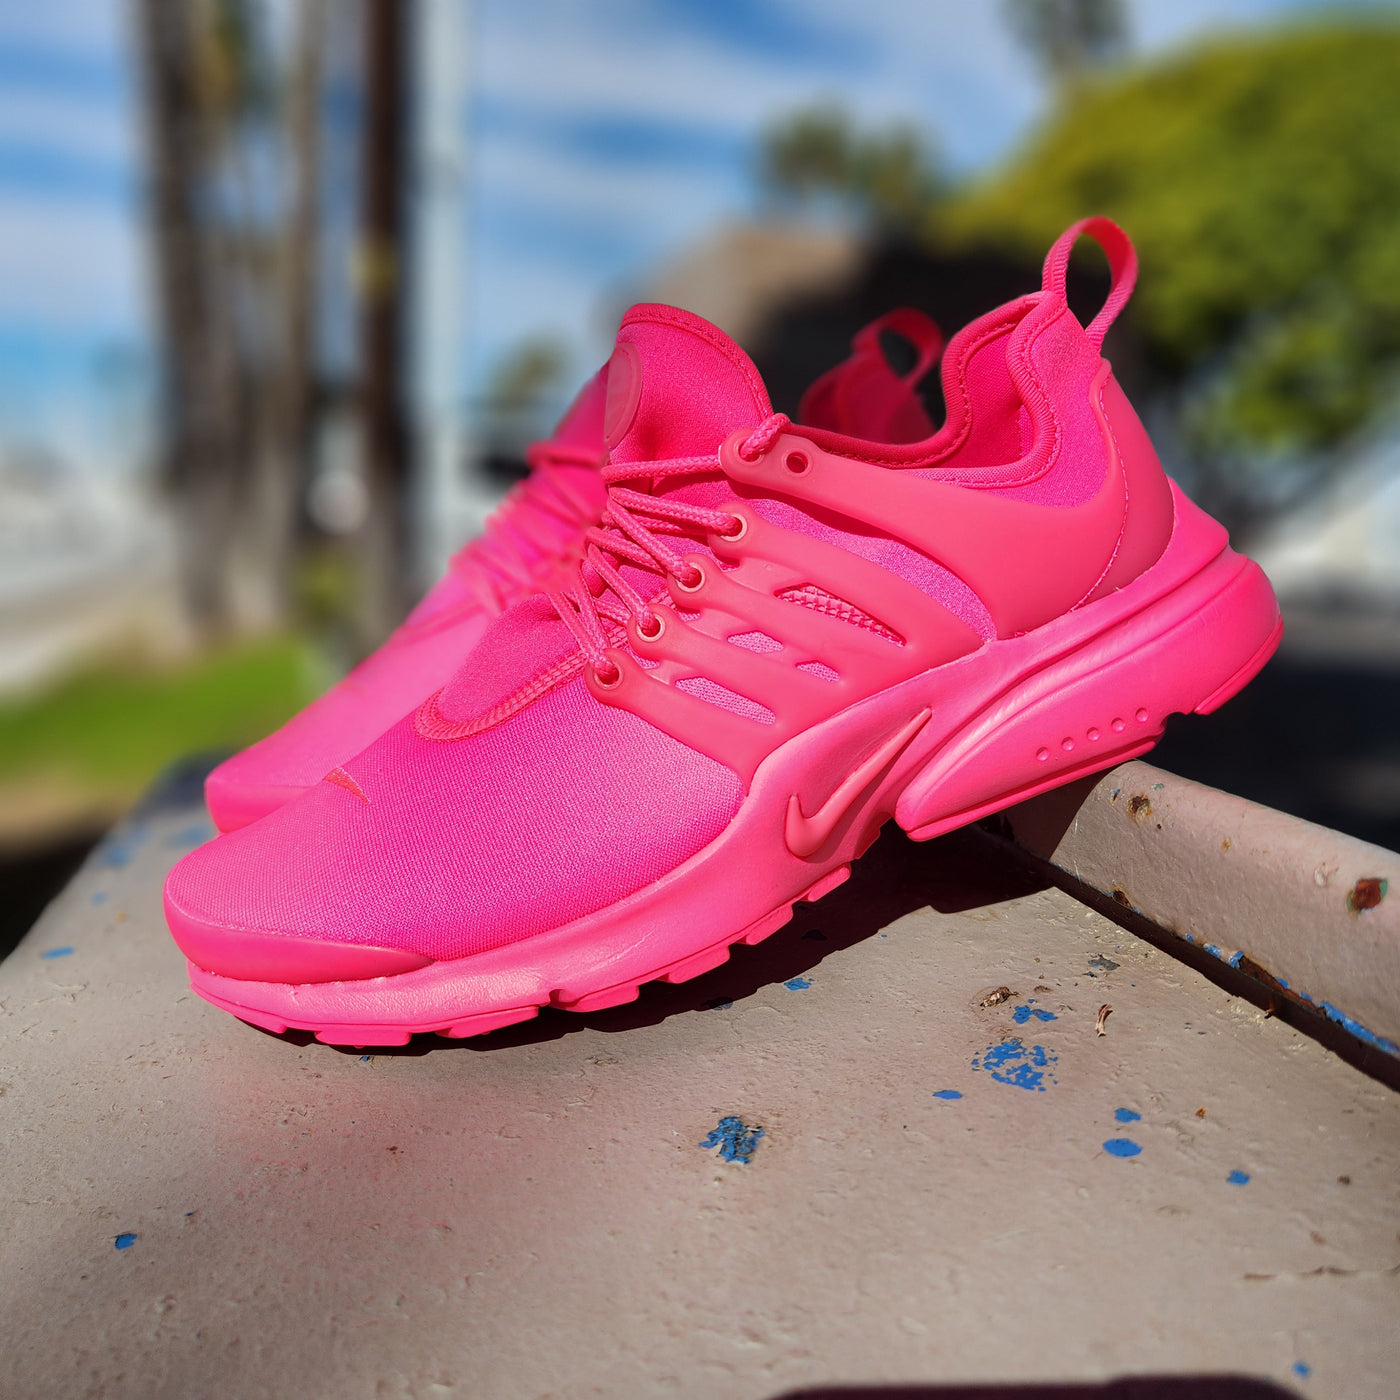 W Nike Air Presto Hyper Pink